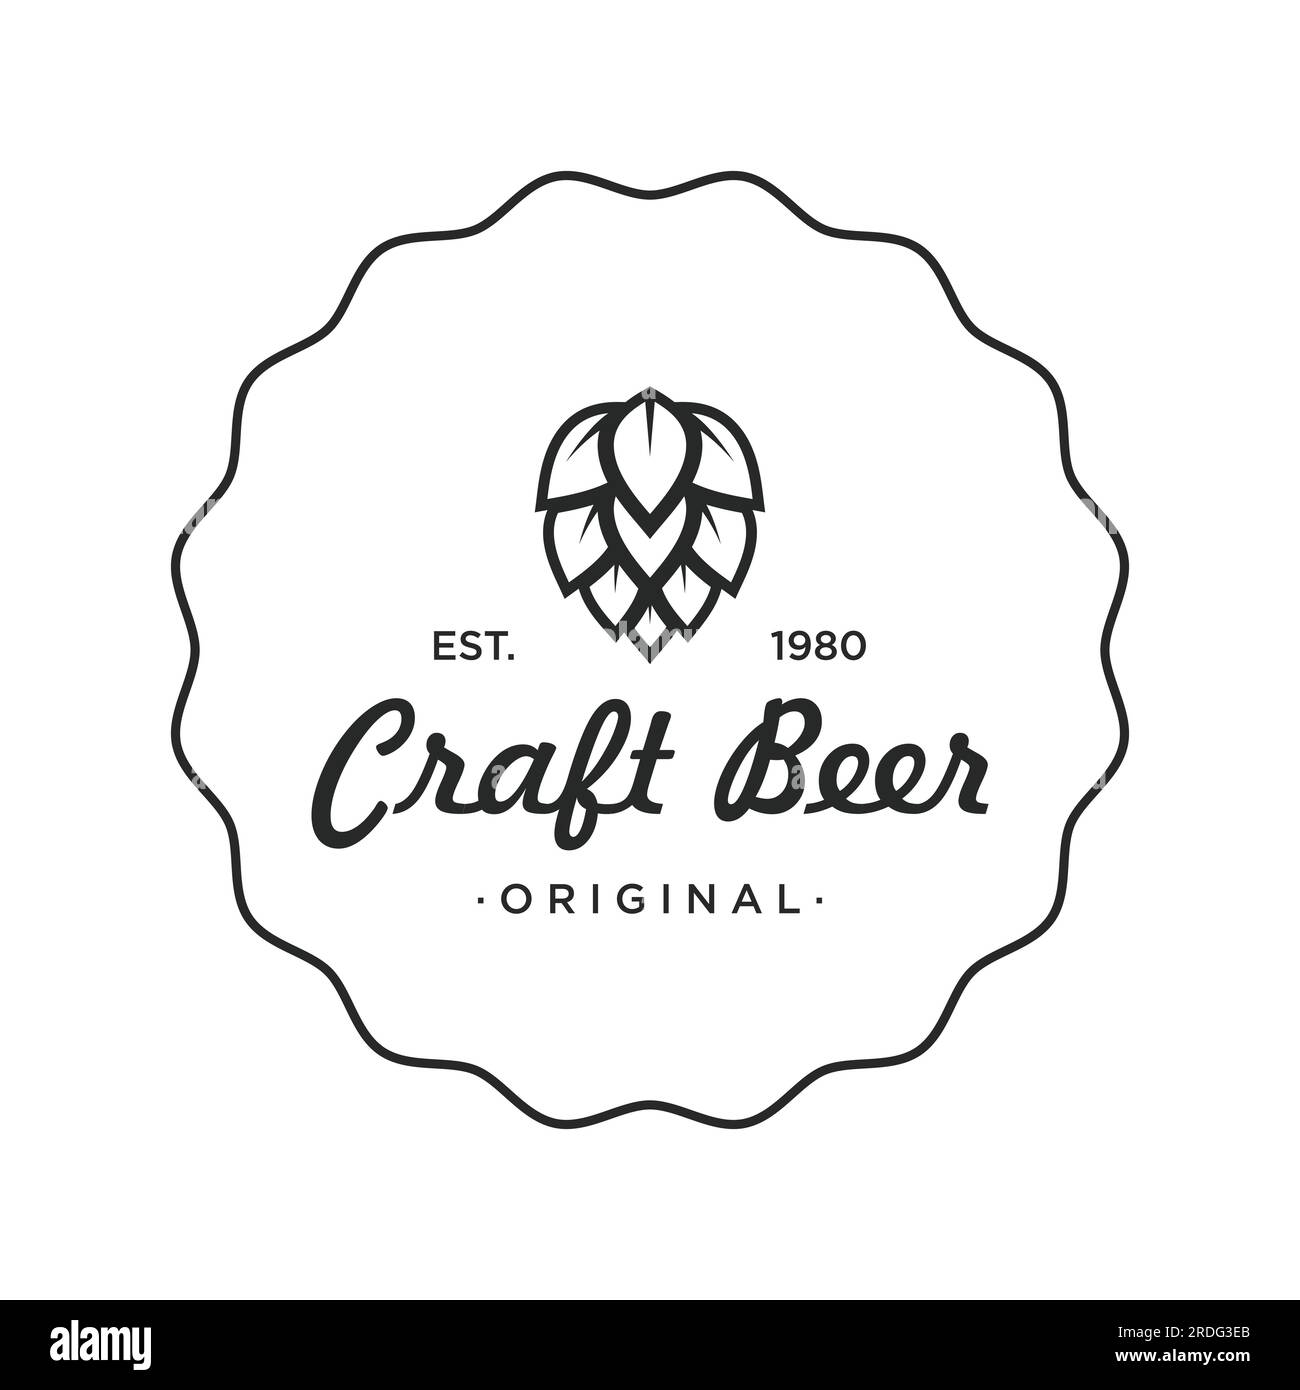 Premium quality vintage craft beer logo template. For badges, emblems ...